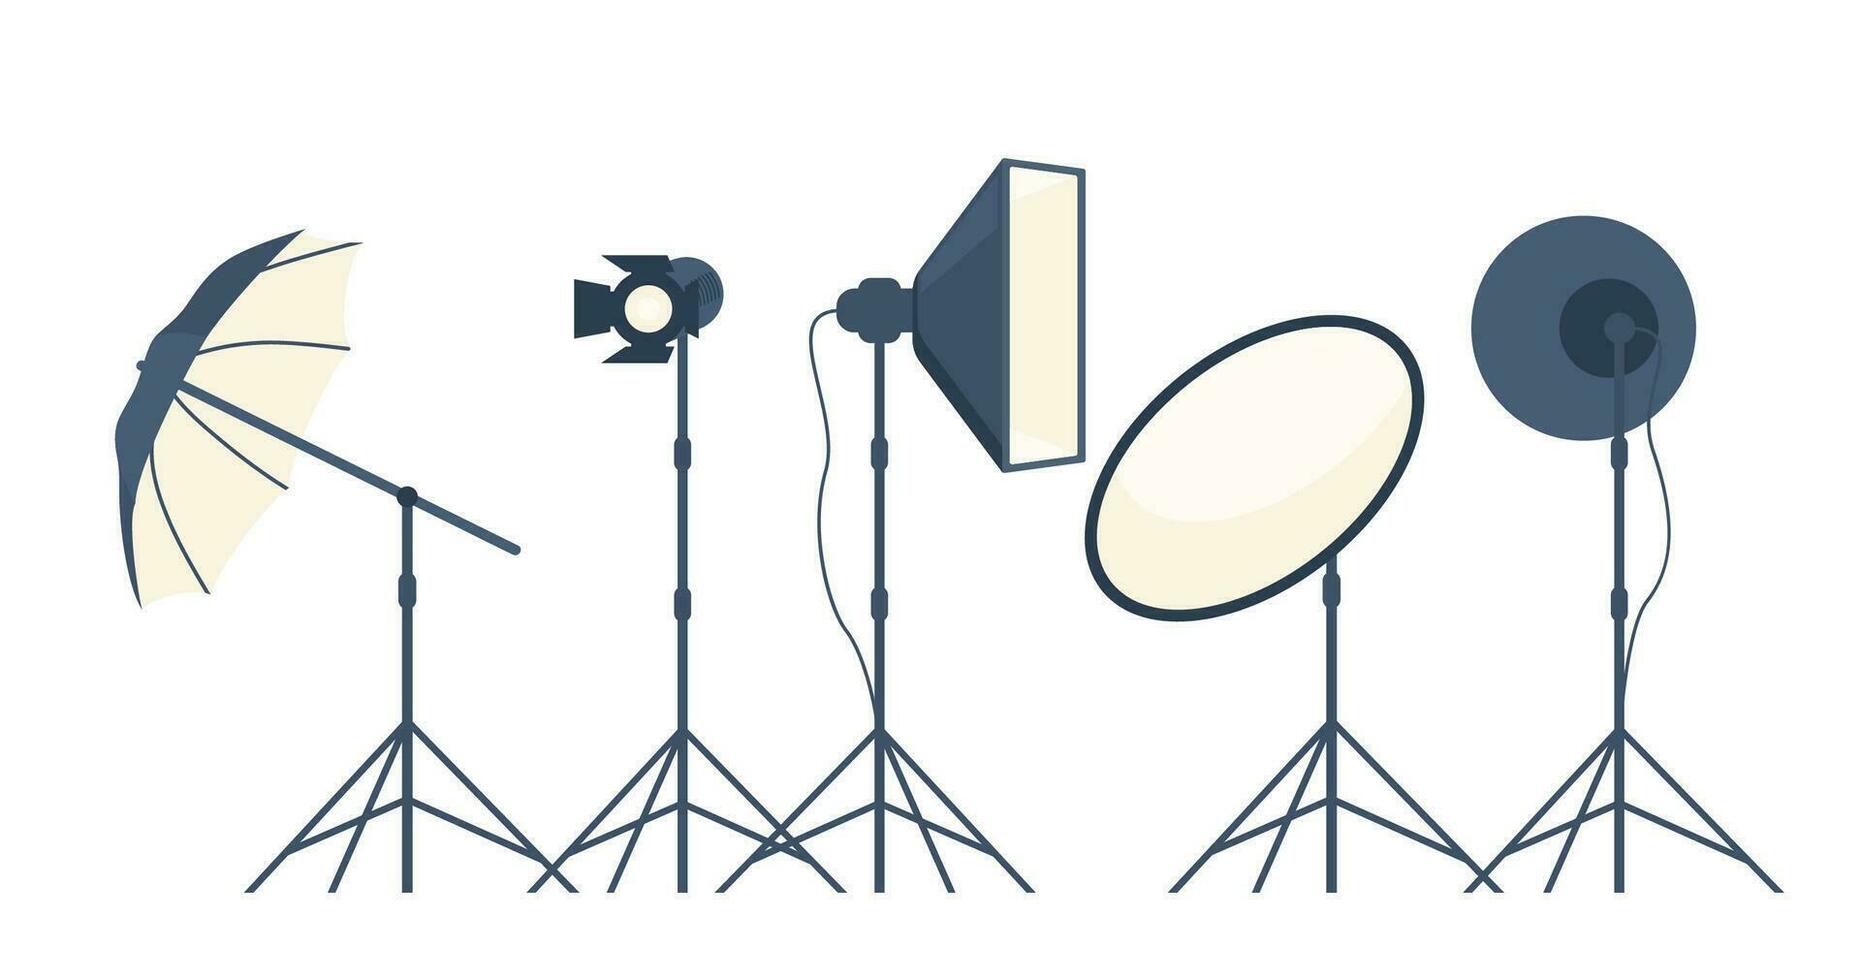 diferente tipos do profissional iluminação equipamento para blogar, vlogging e estúdio foto e vídeo. vetor ilustração.